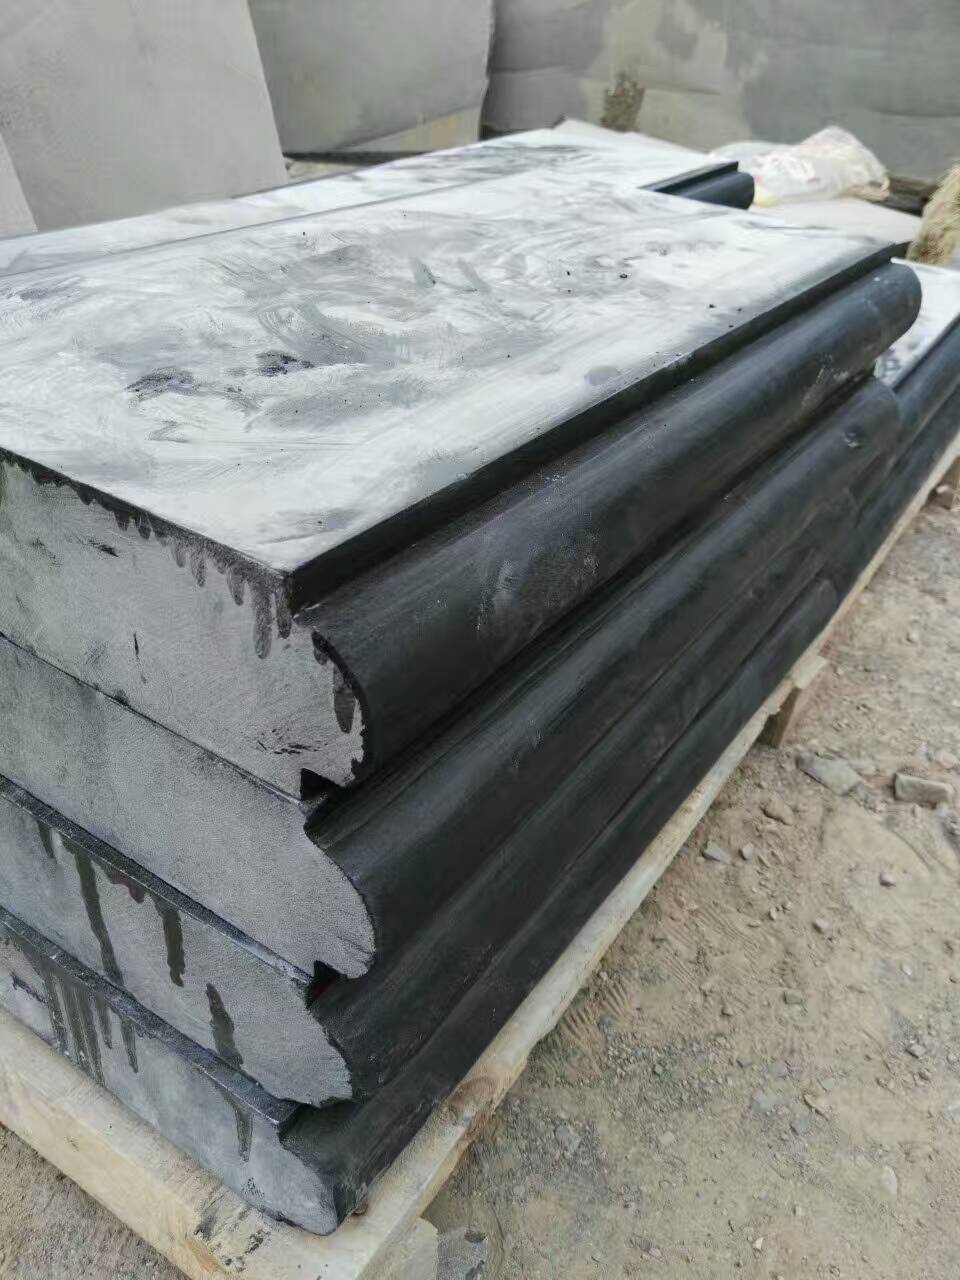 中国黑石材生产 石材加工 石材质量 石材供应 石材价格中国黑石材生产 石材加工 石材质量 石材供应 石材价格